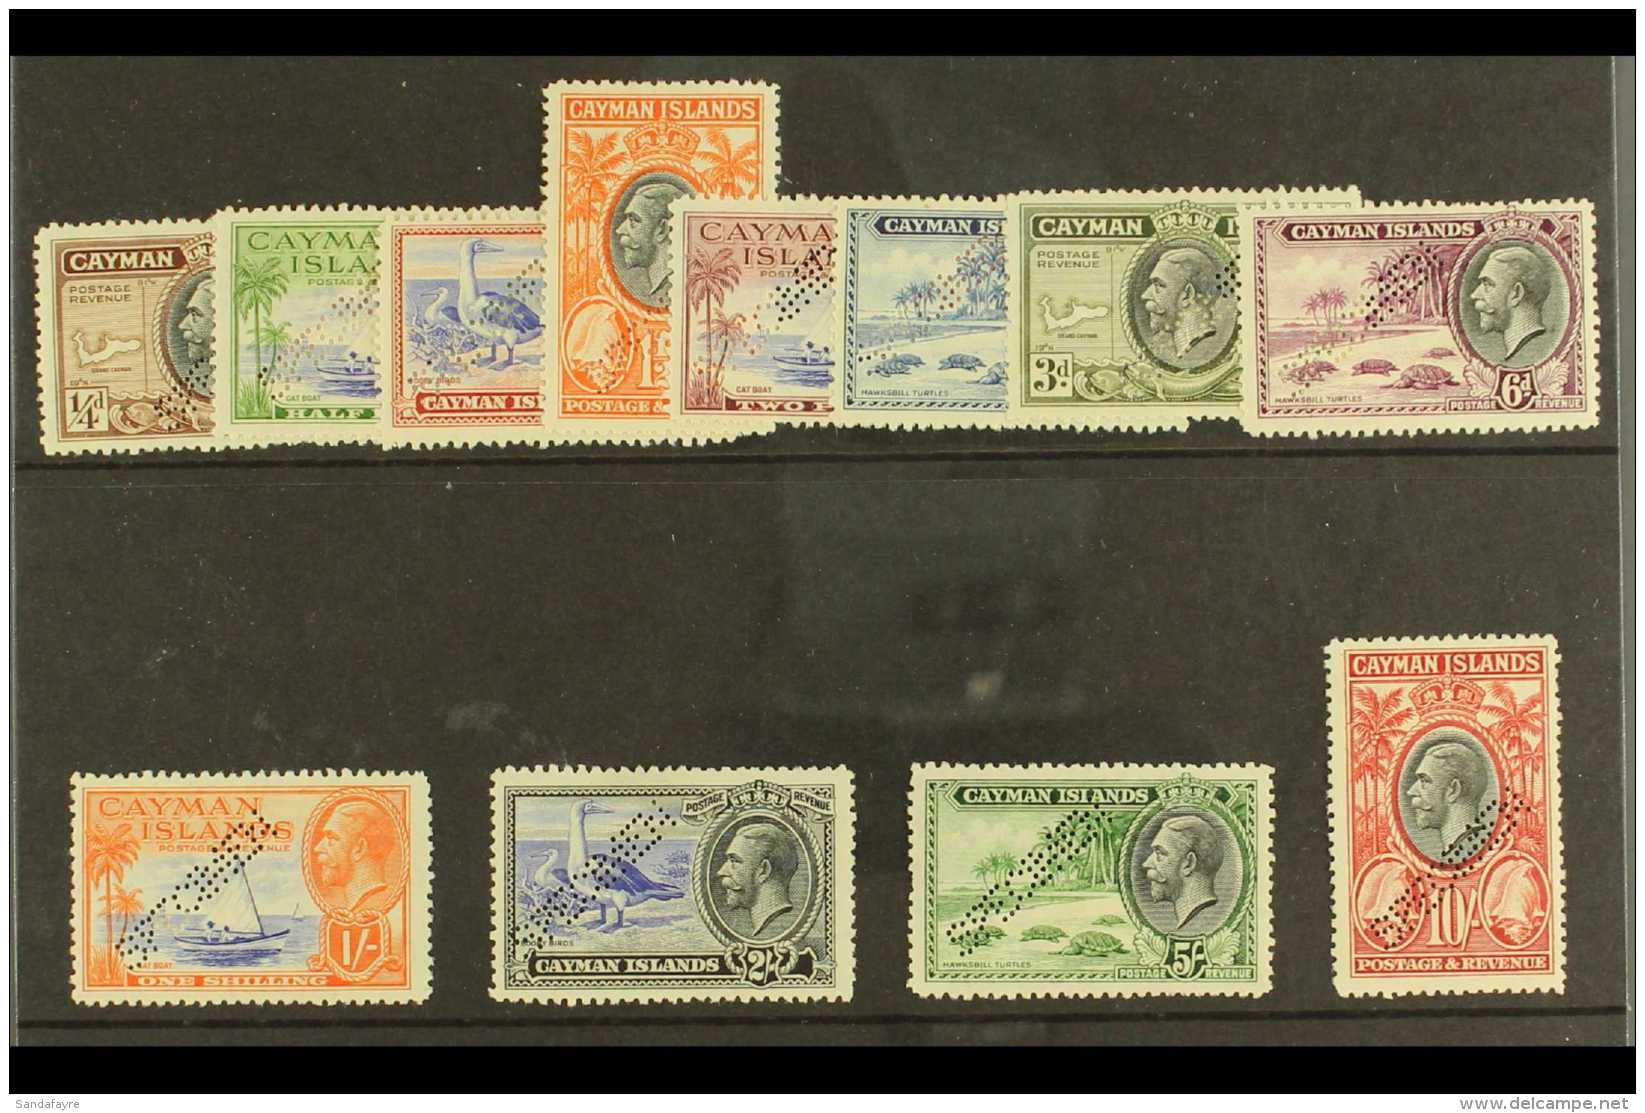 1935 Pictorial Definitives Perf "SPECIMEN" Complete Set, SG 96s/107s, Fine Fresh Mint, The &frac12;d Value With... - Iles Caïmans